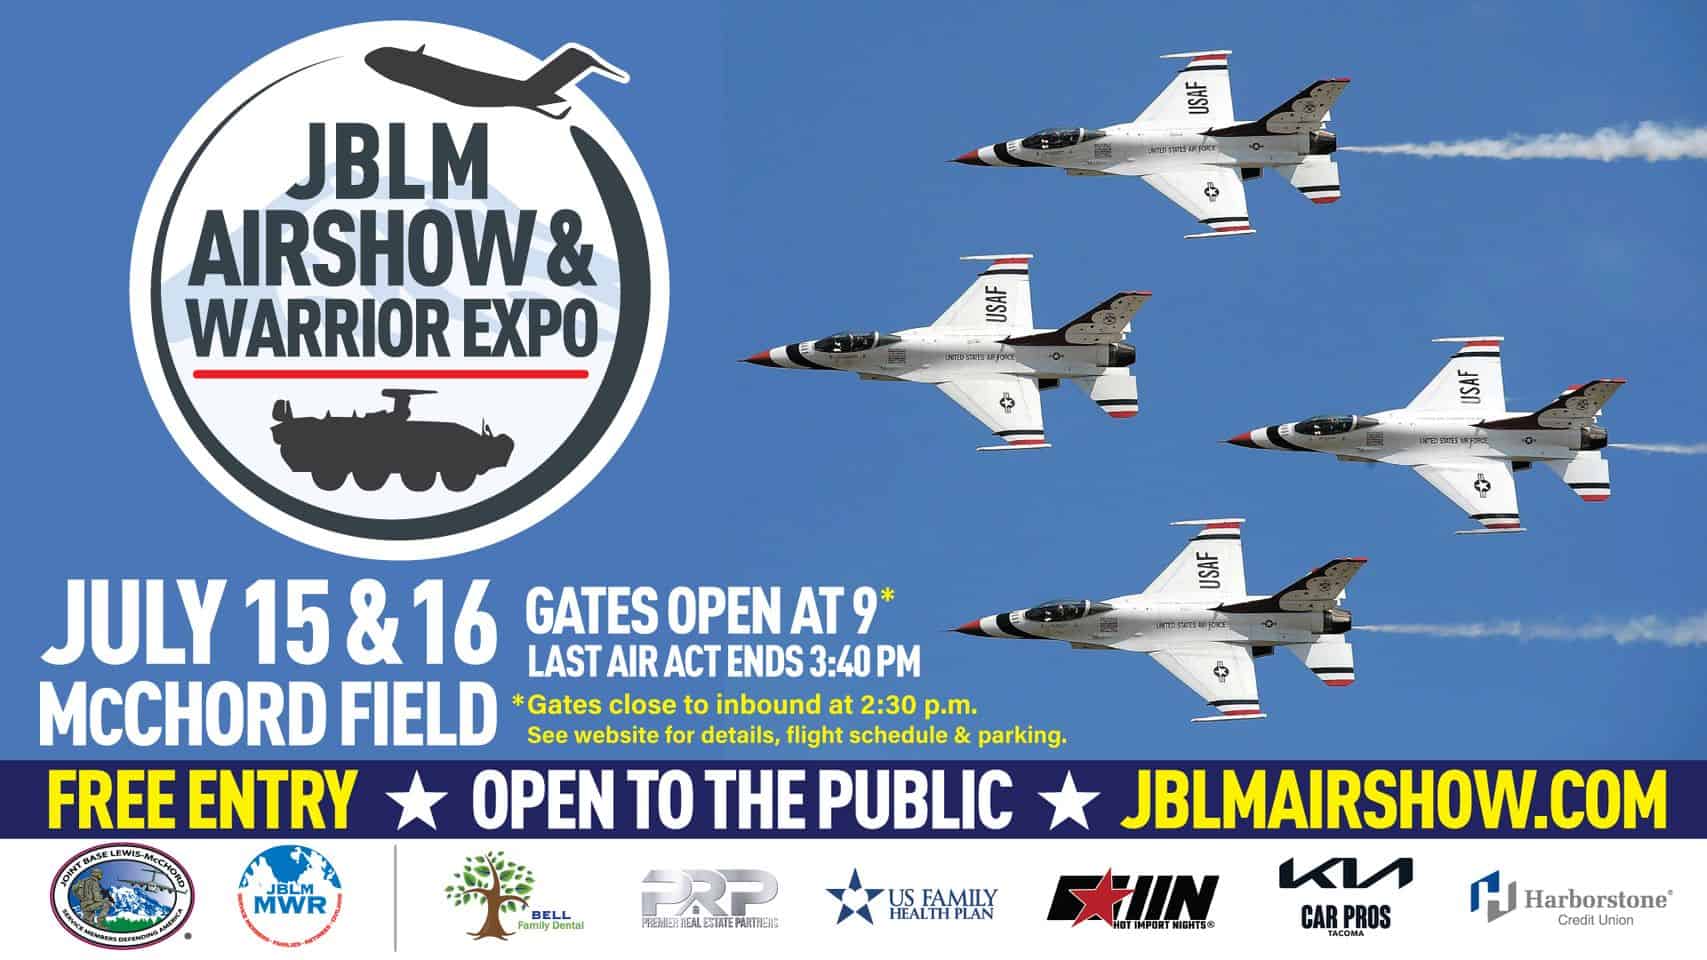 Airshow & Warrior Expo at JBLM